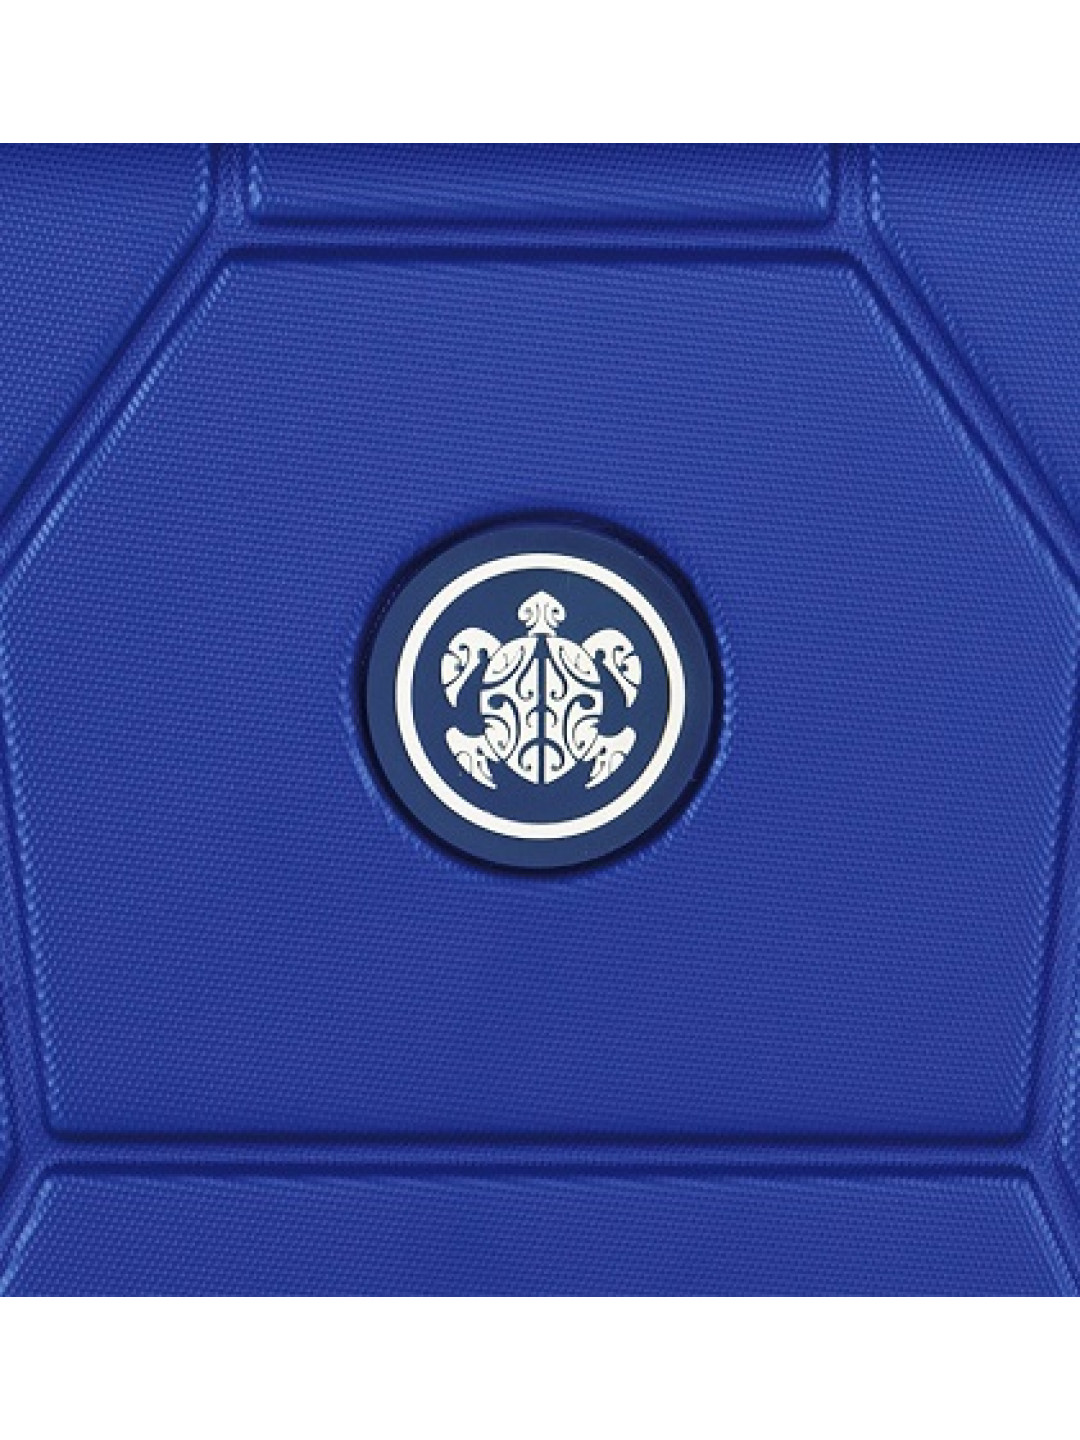 SUITSUIT TR-1225 3-L ABS Caretta Dazzling Blue